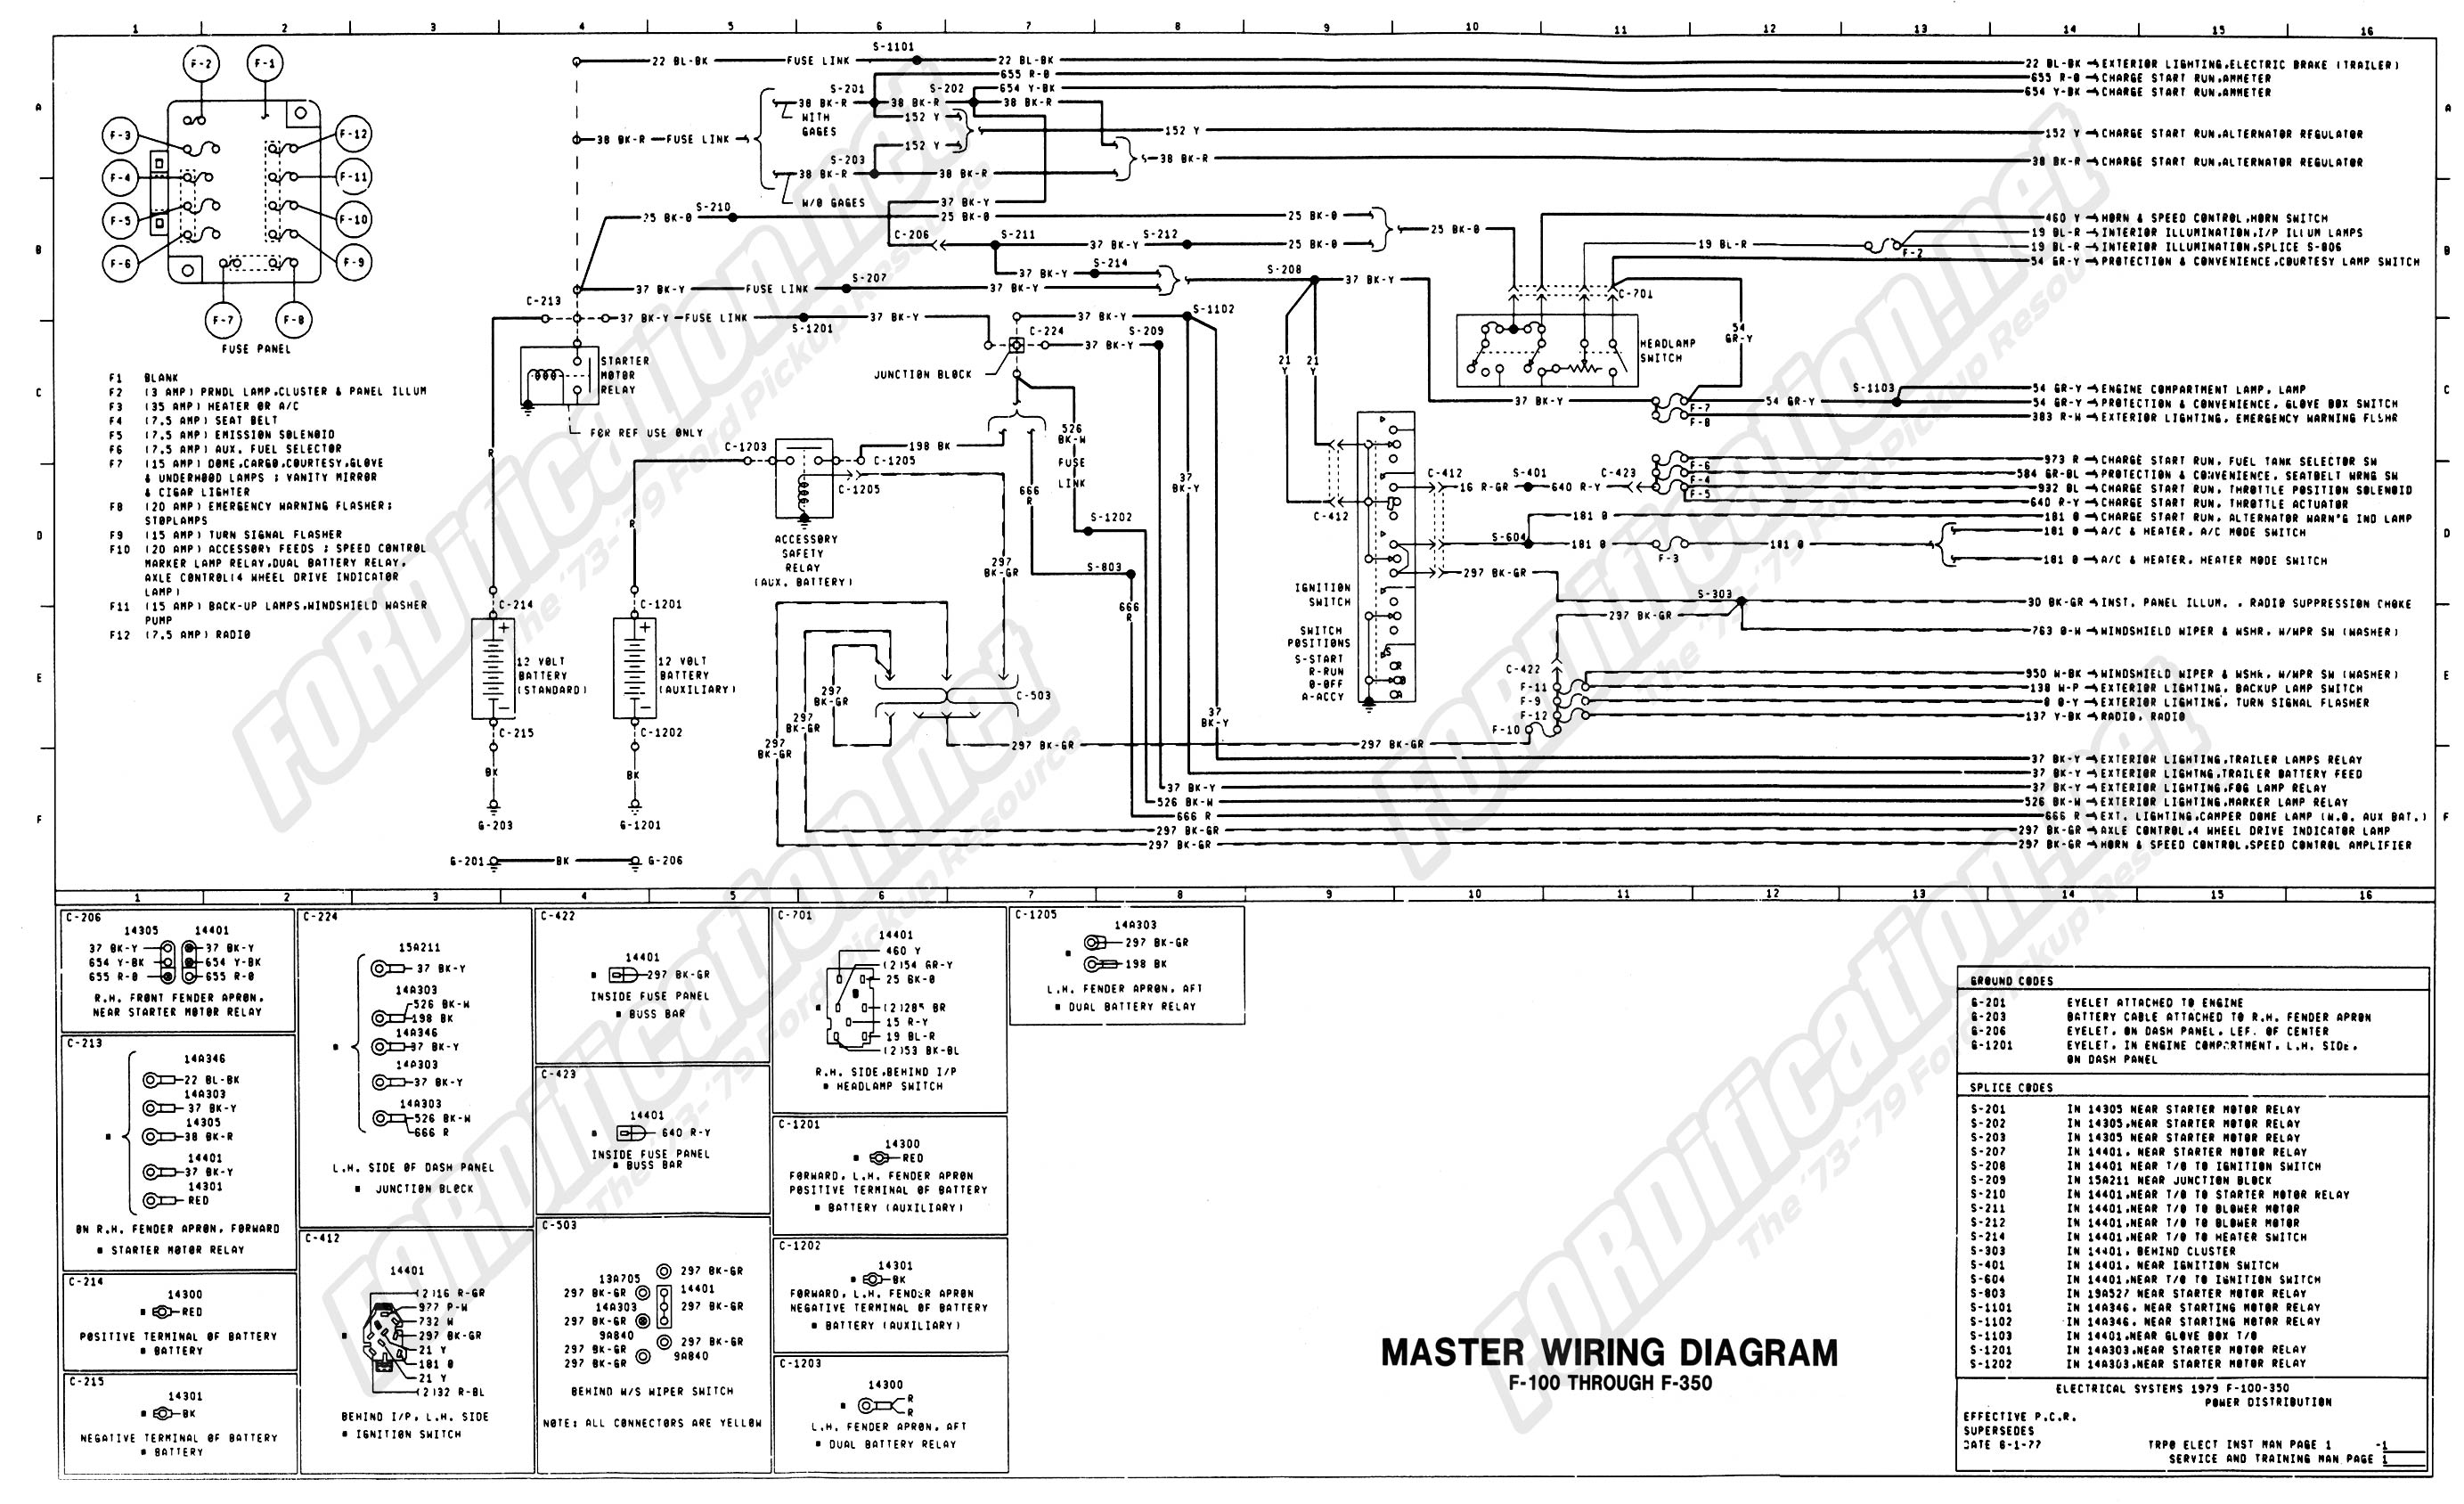 1979 Ford f100 wiring diagram #6